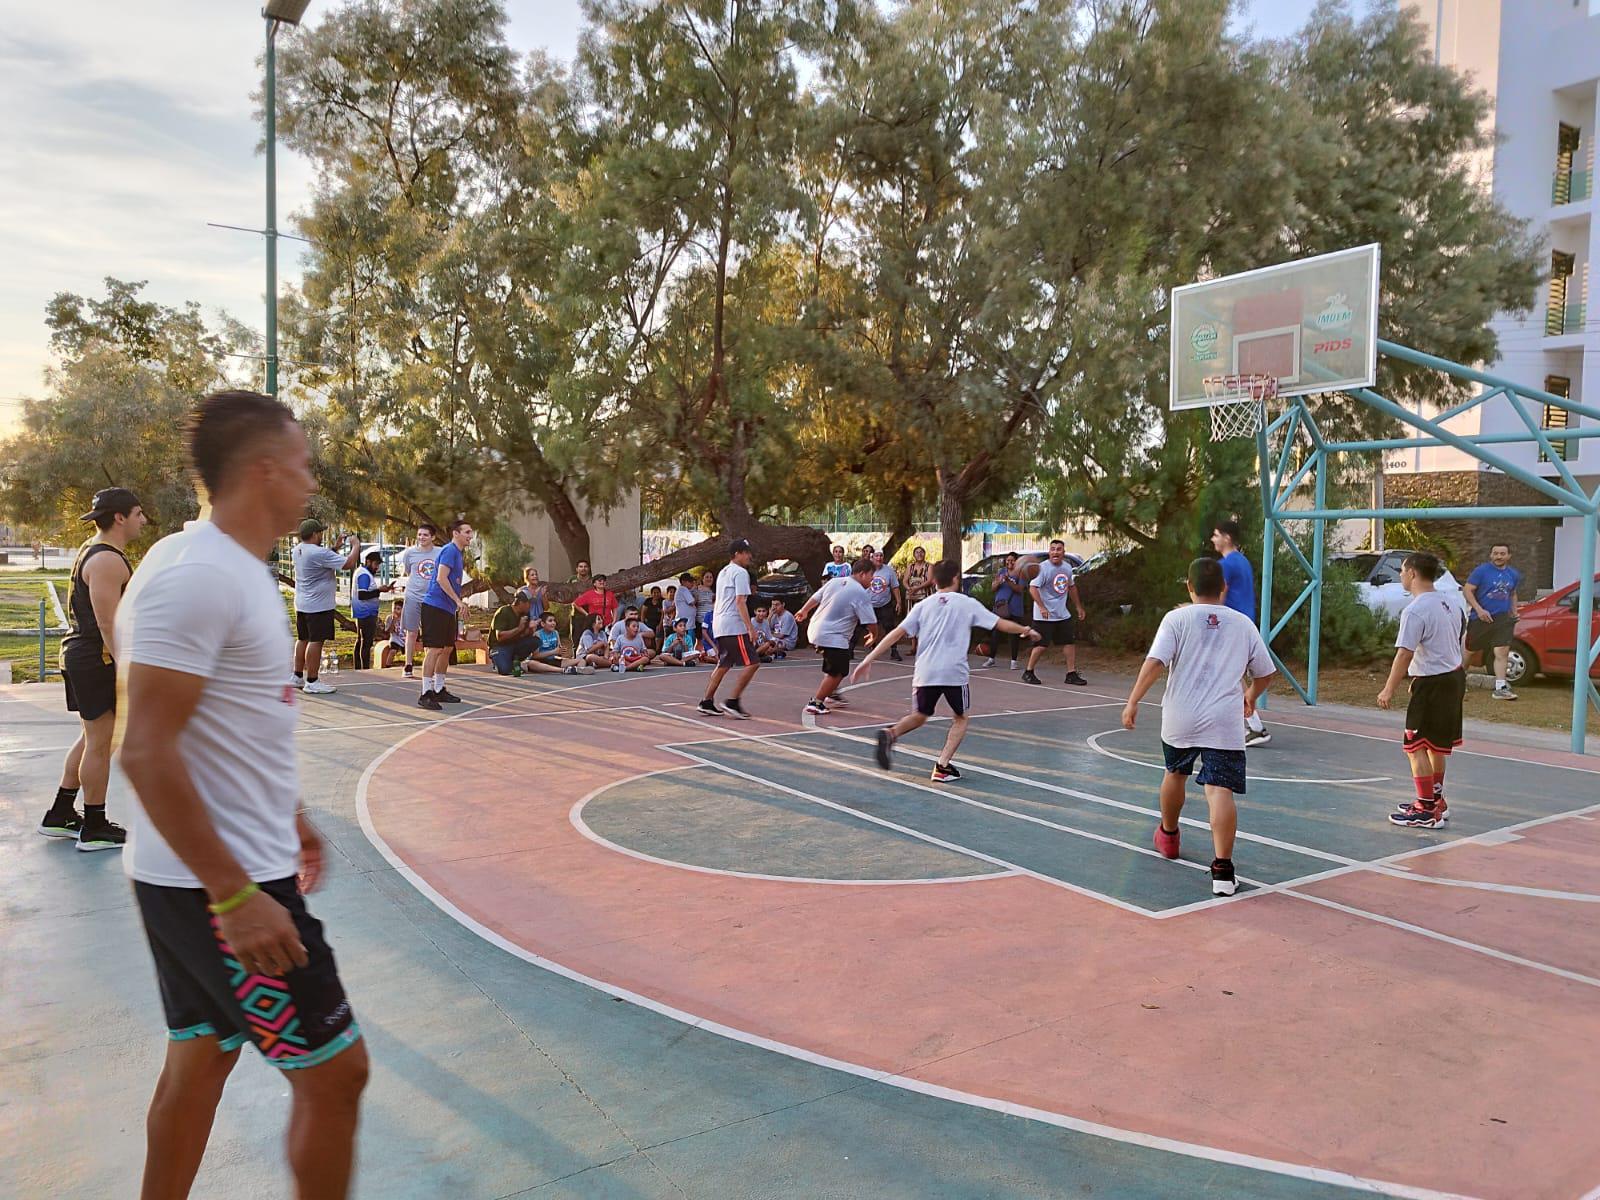 $!Piratas Basketball estrecha lazos de amistad con Súper Héroes Mazatlán